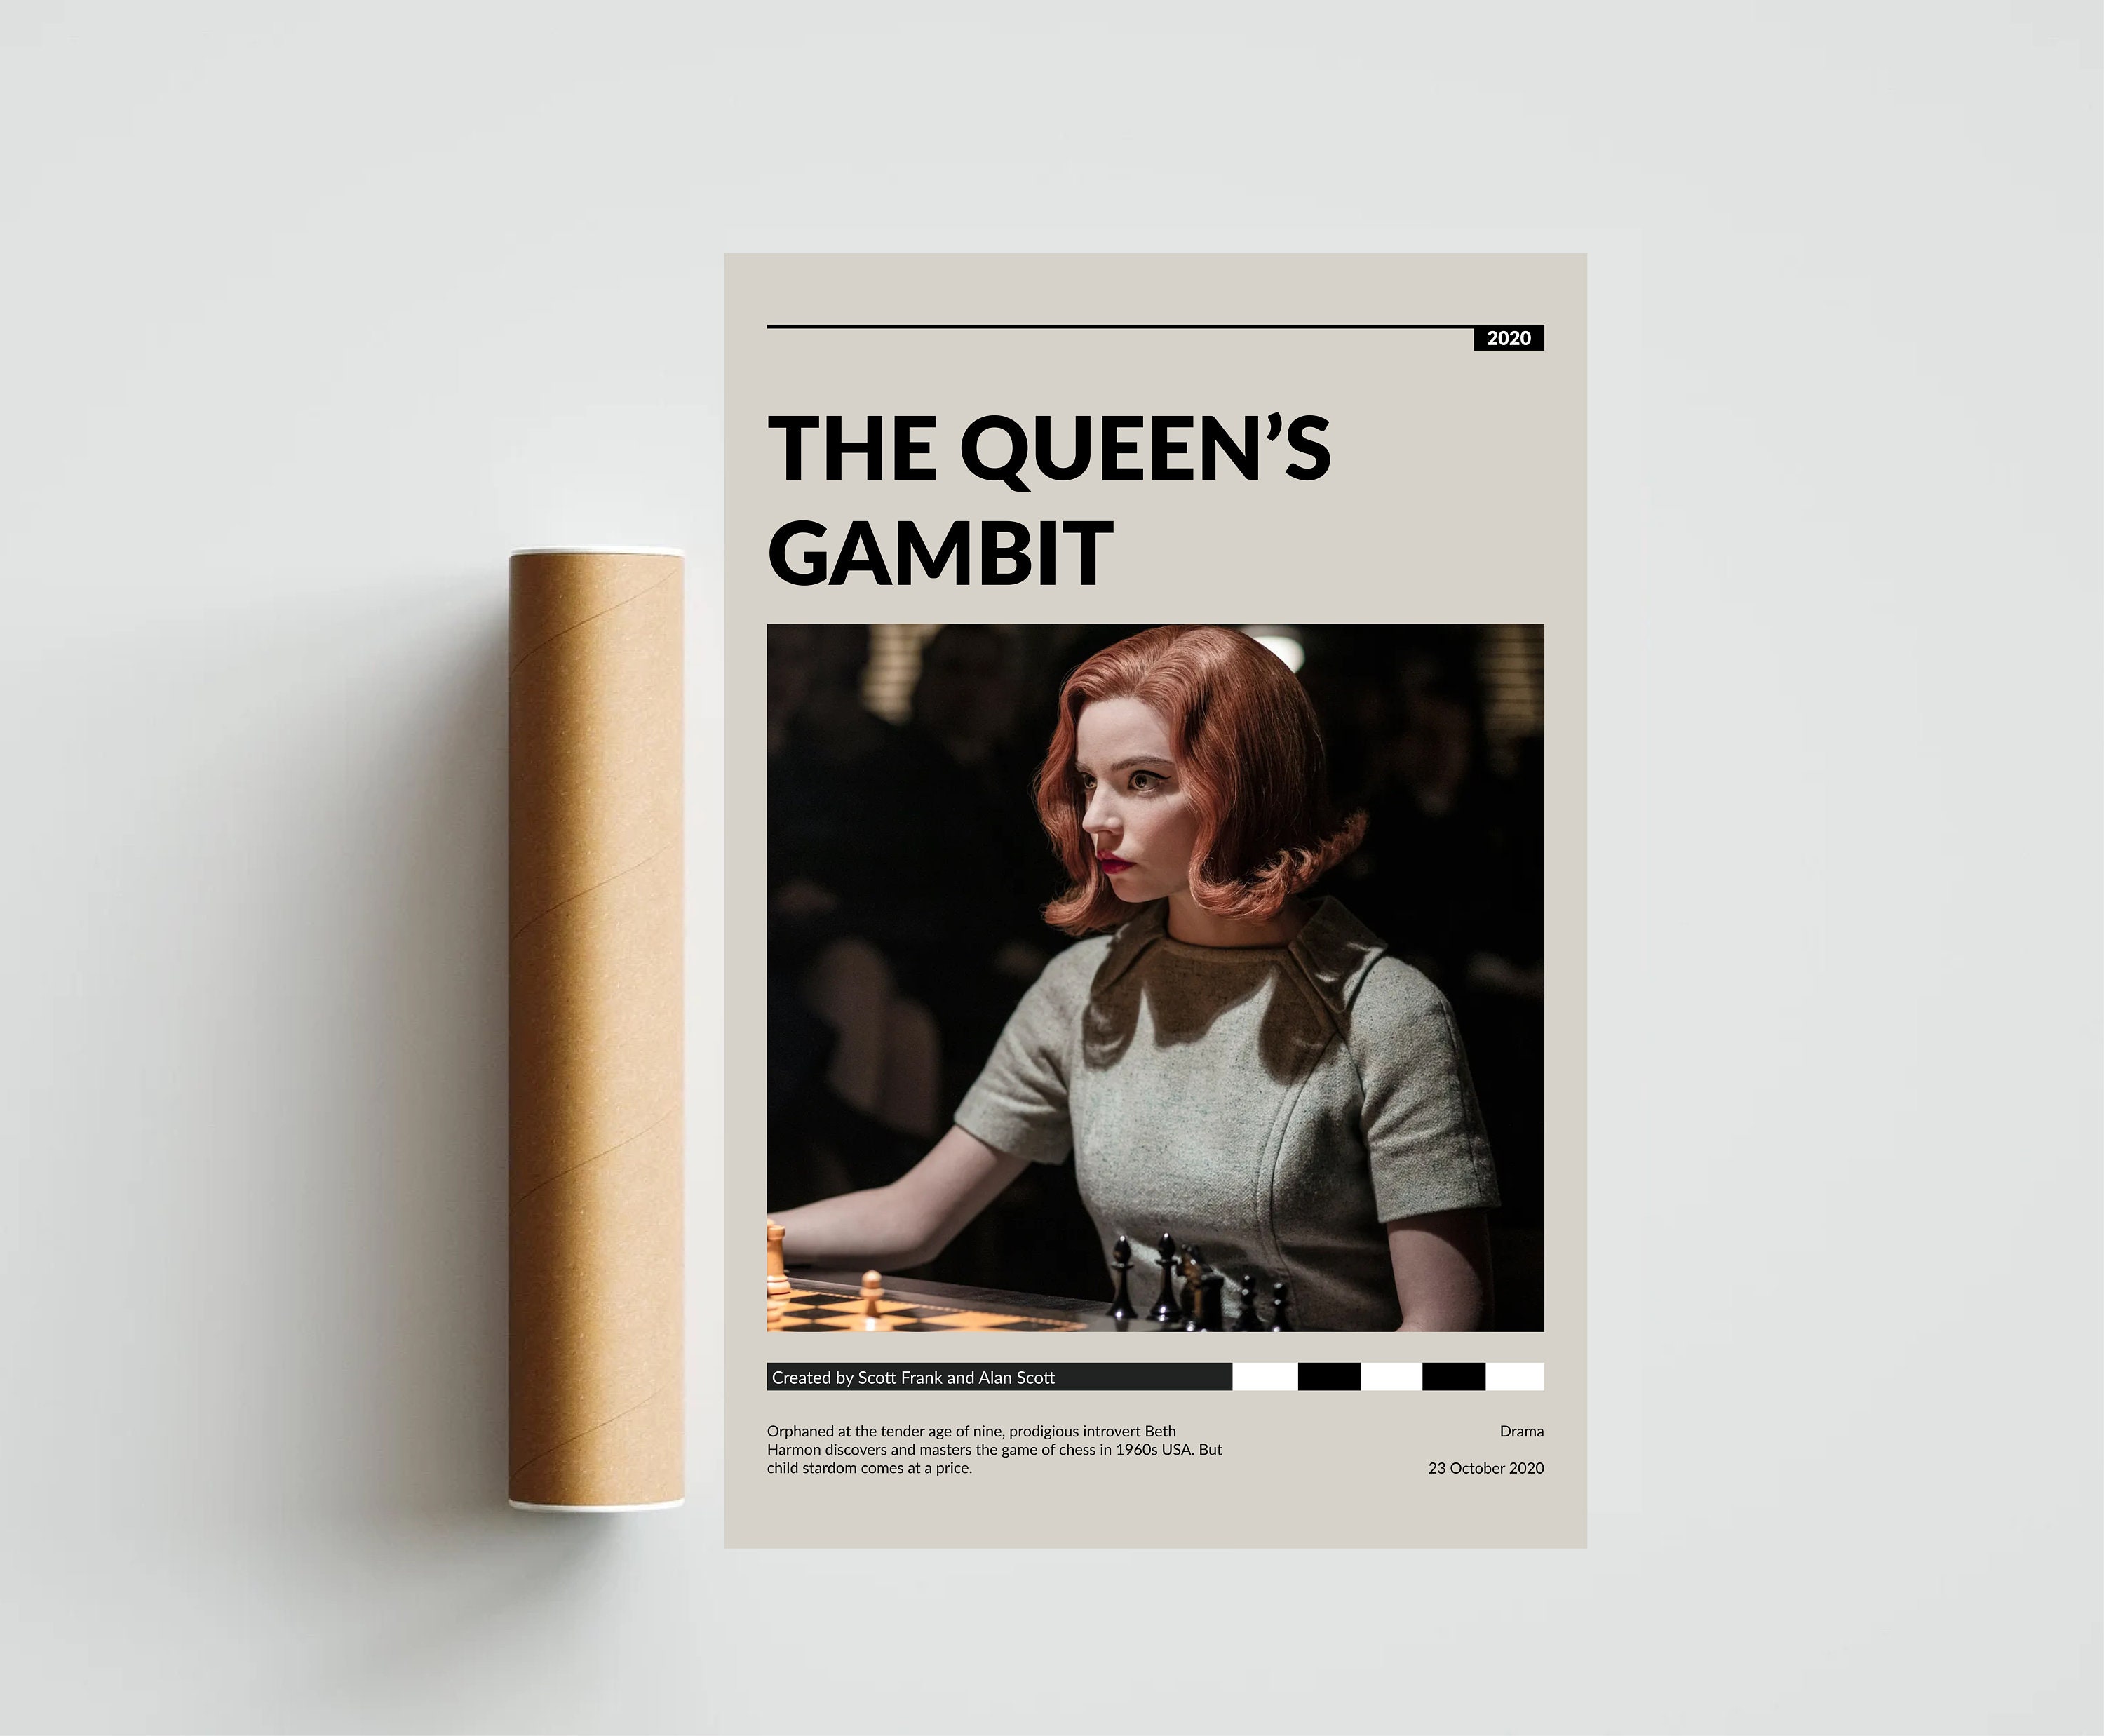 Gambito de dama / The Queen's Gambit (Paperback) 